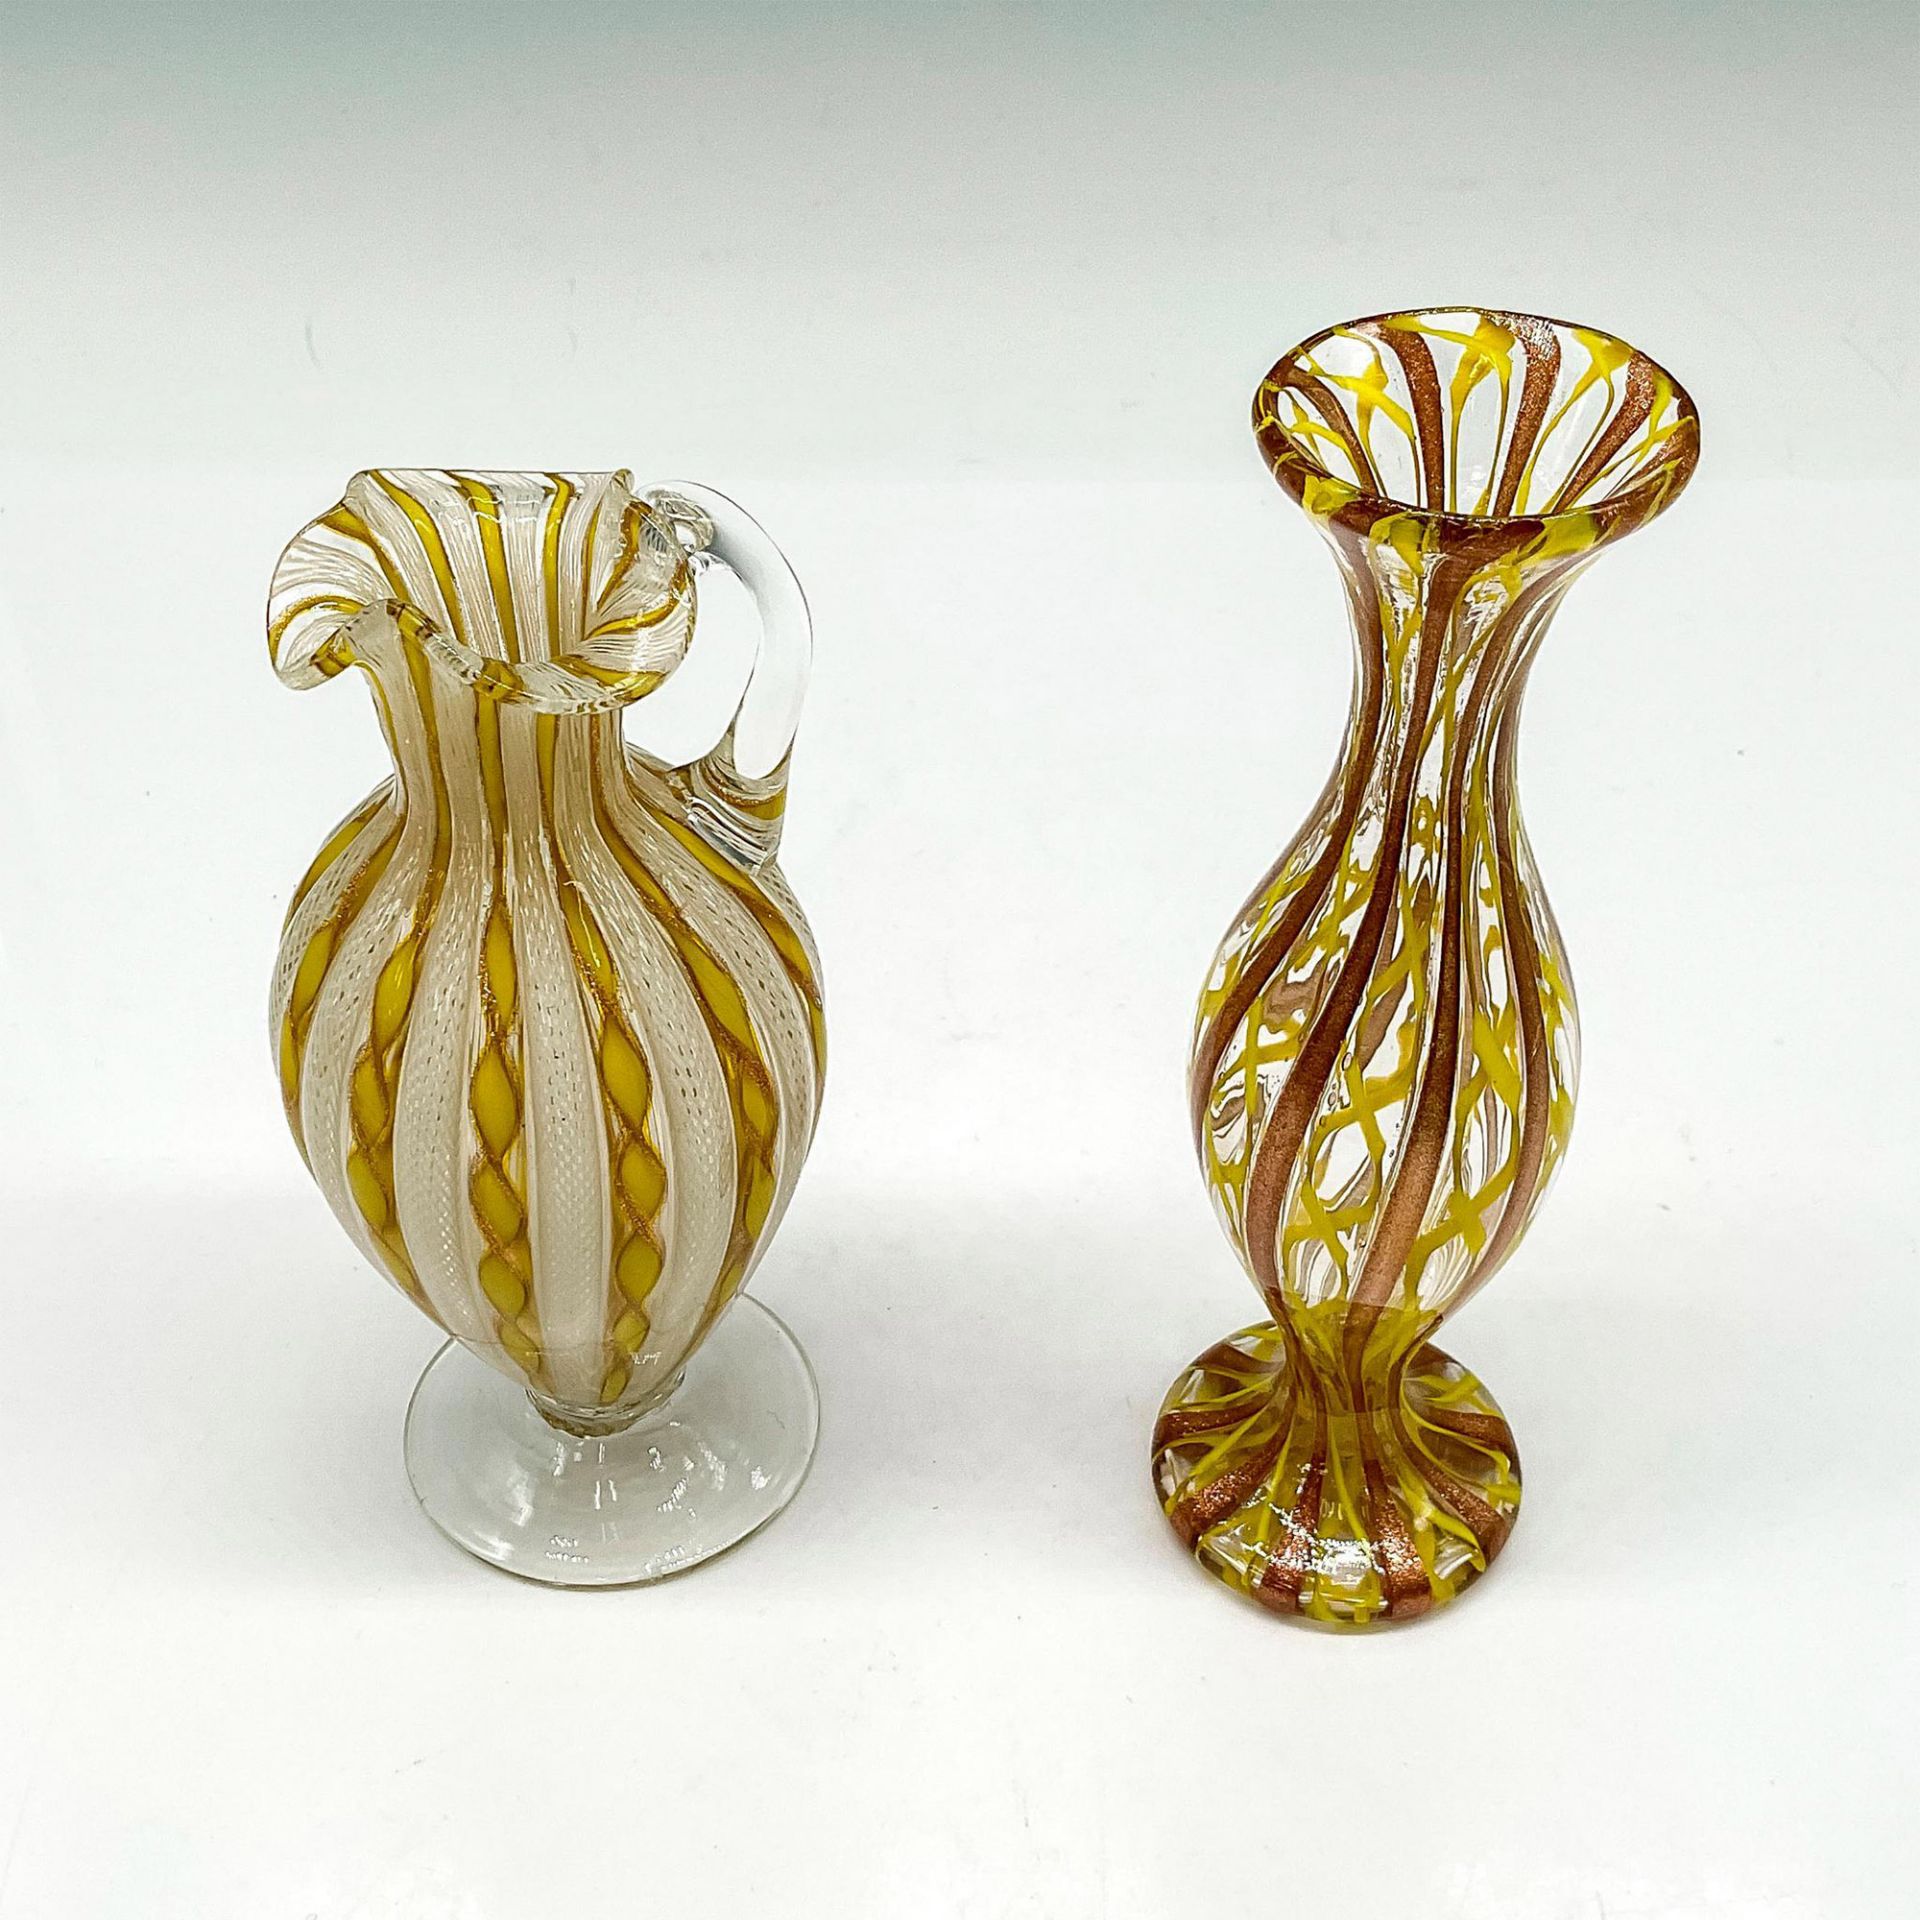 2pc Murano Glass Yellow Latticino Bud Vases - Image 2 of 3